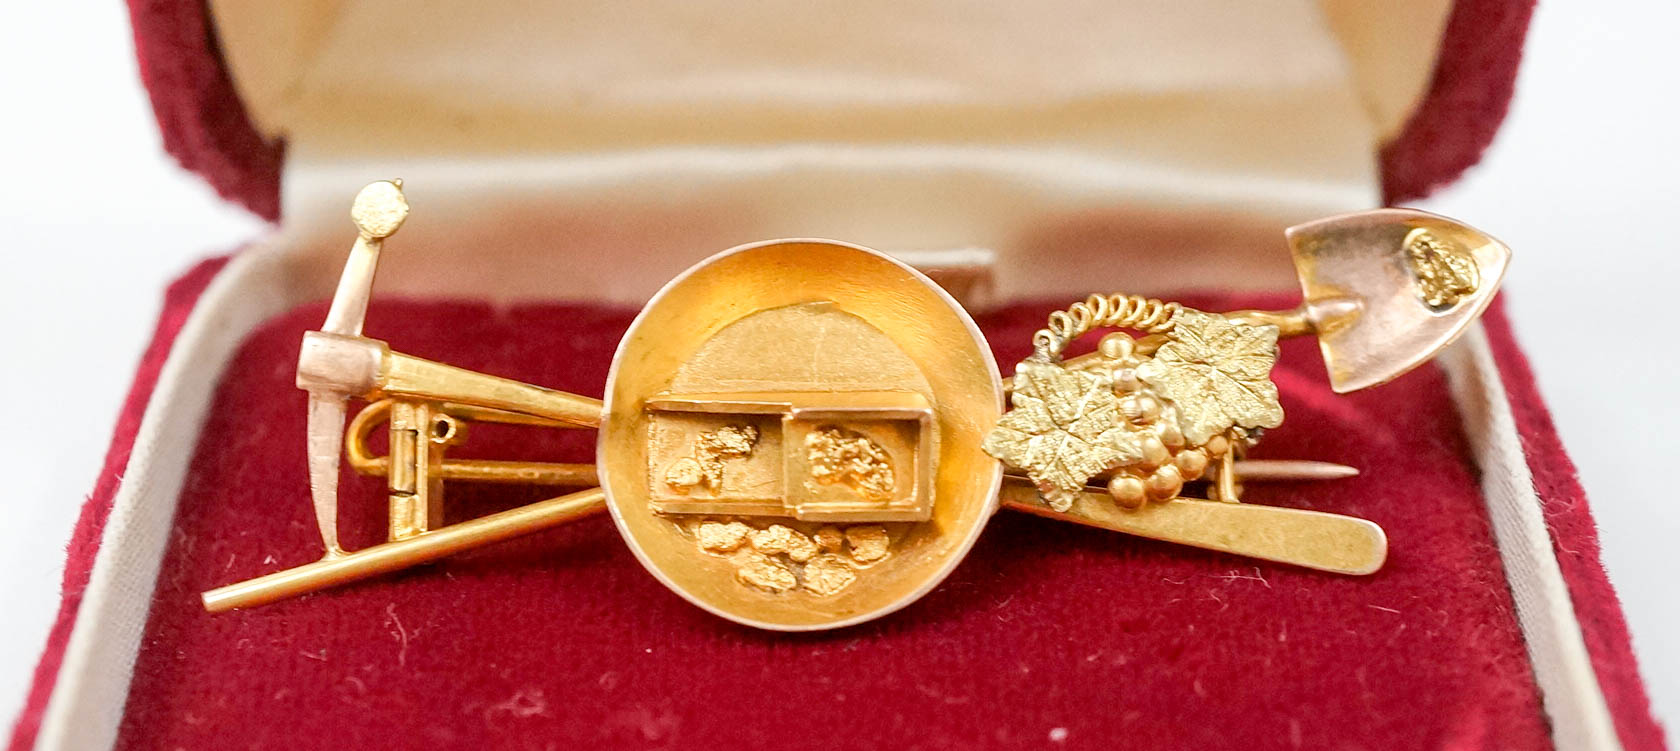 14k Gold Prospector's Pin with Pan, Shovel, Pan